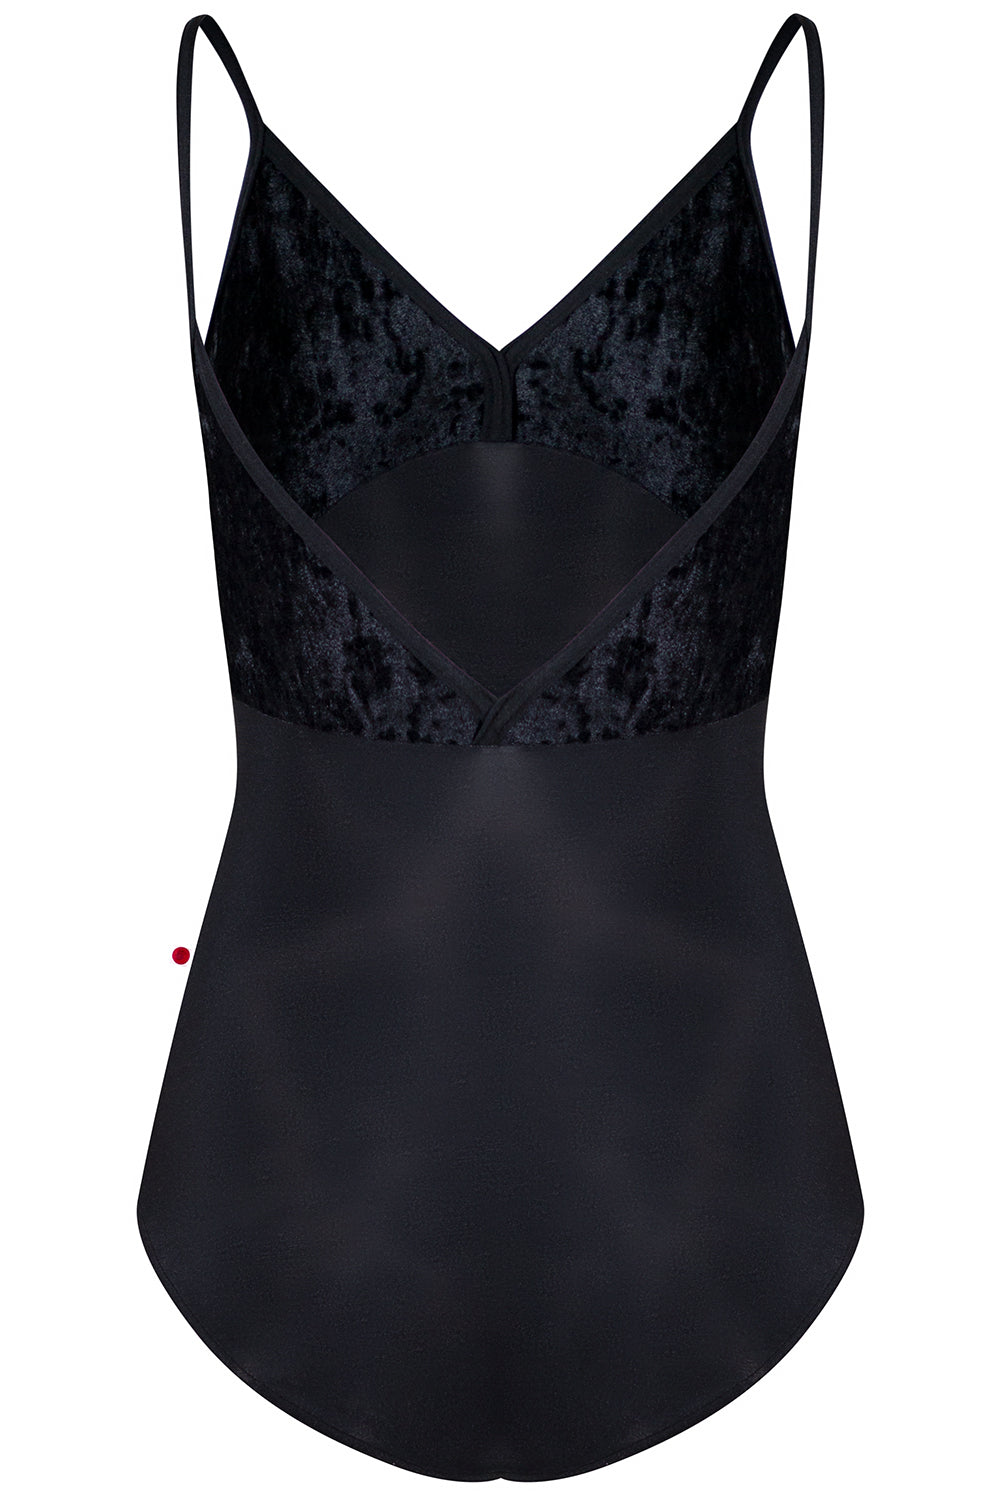 Daria leotard in N-Black body color with CV-Black top color